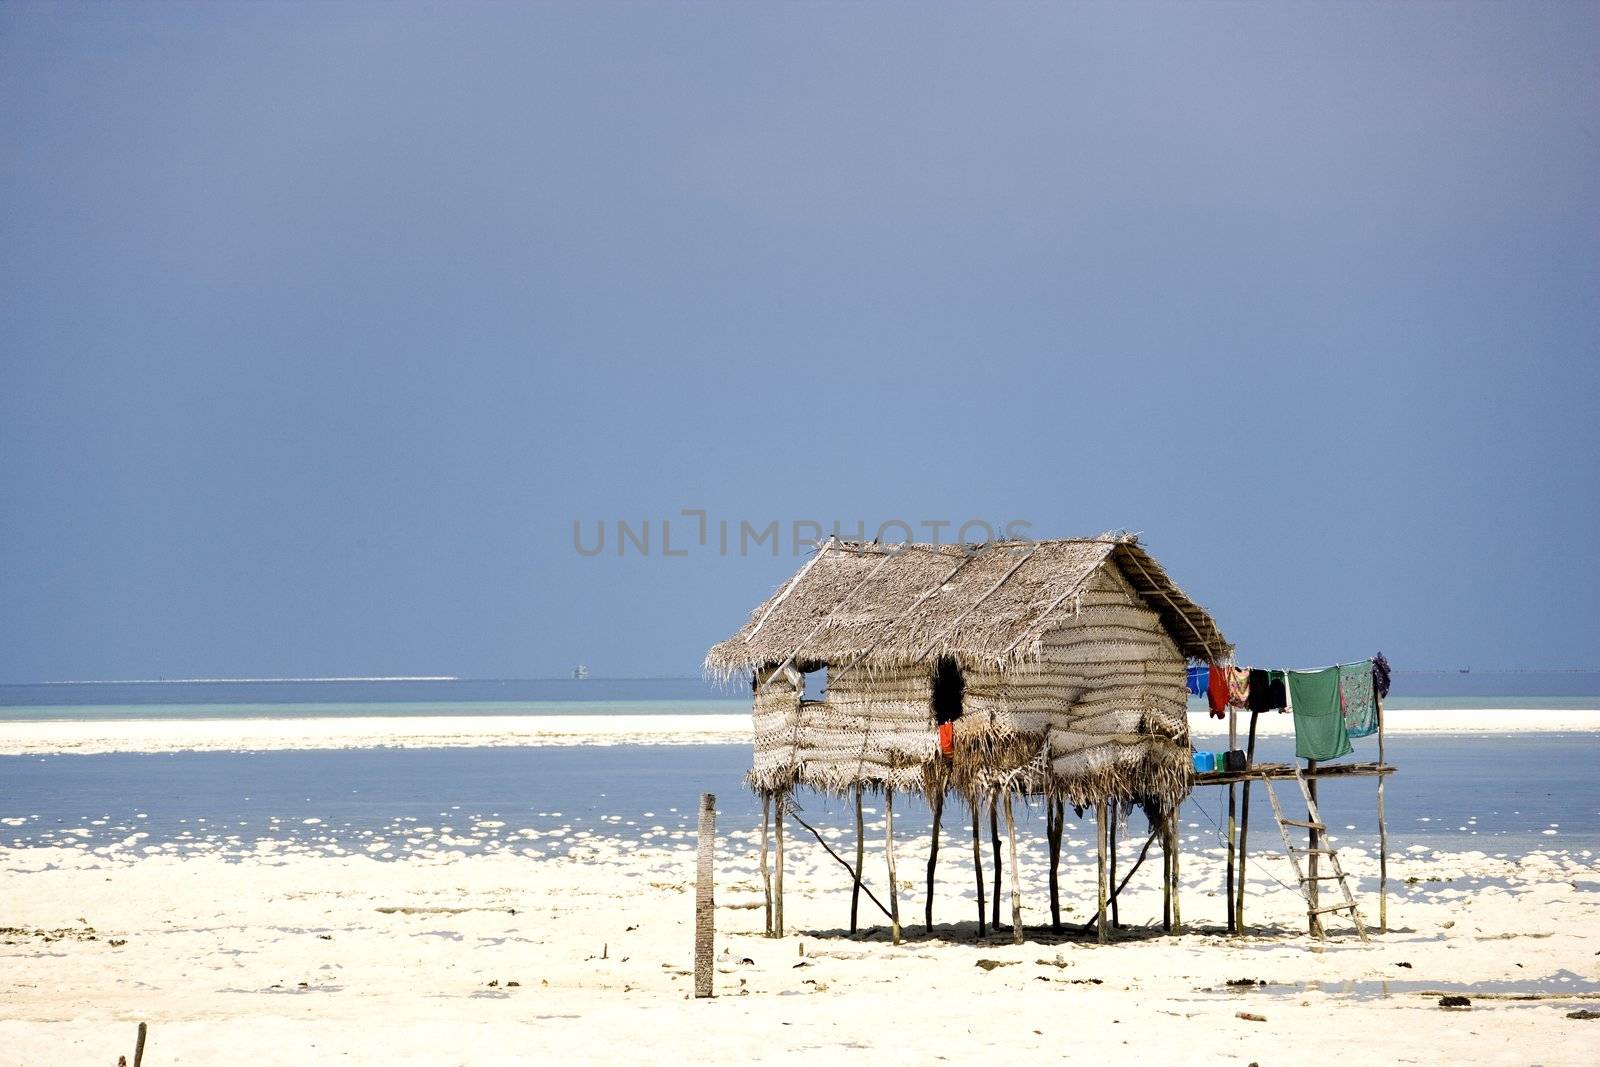 Image of a native hut on stilts.